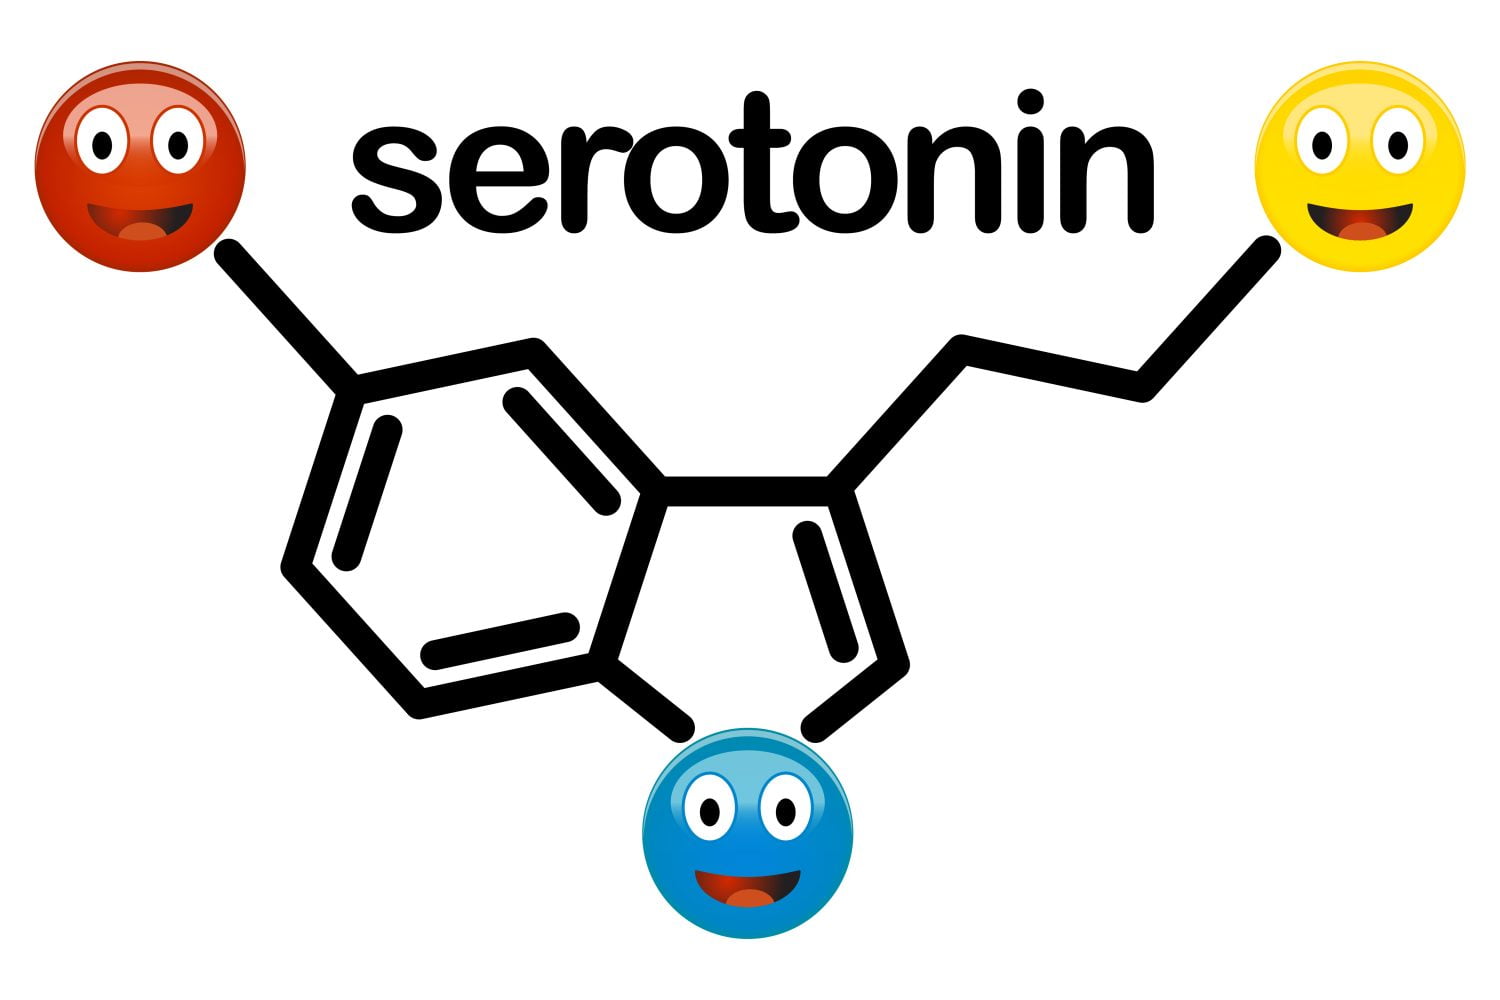 Imagen de estructura química de la serotonina con emoticones sonrientes